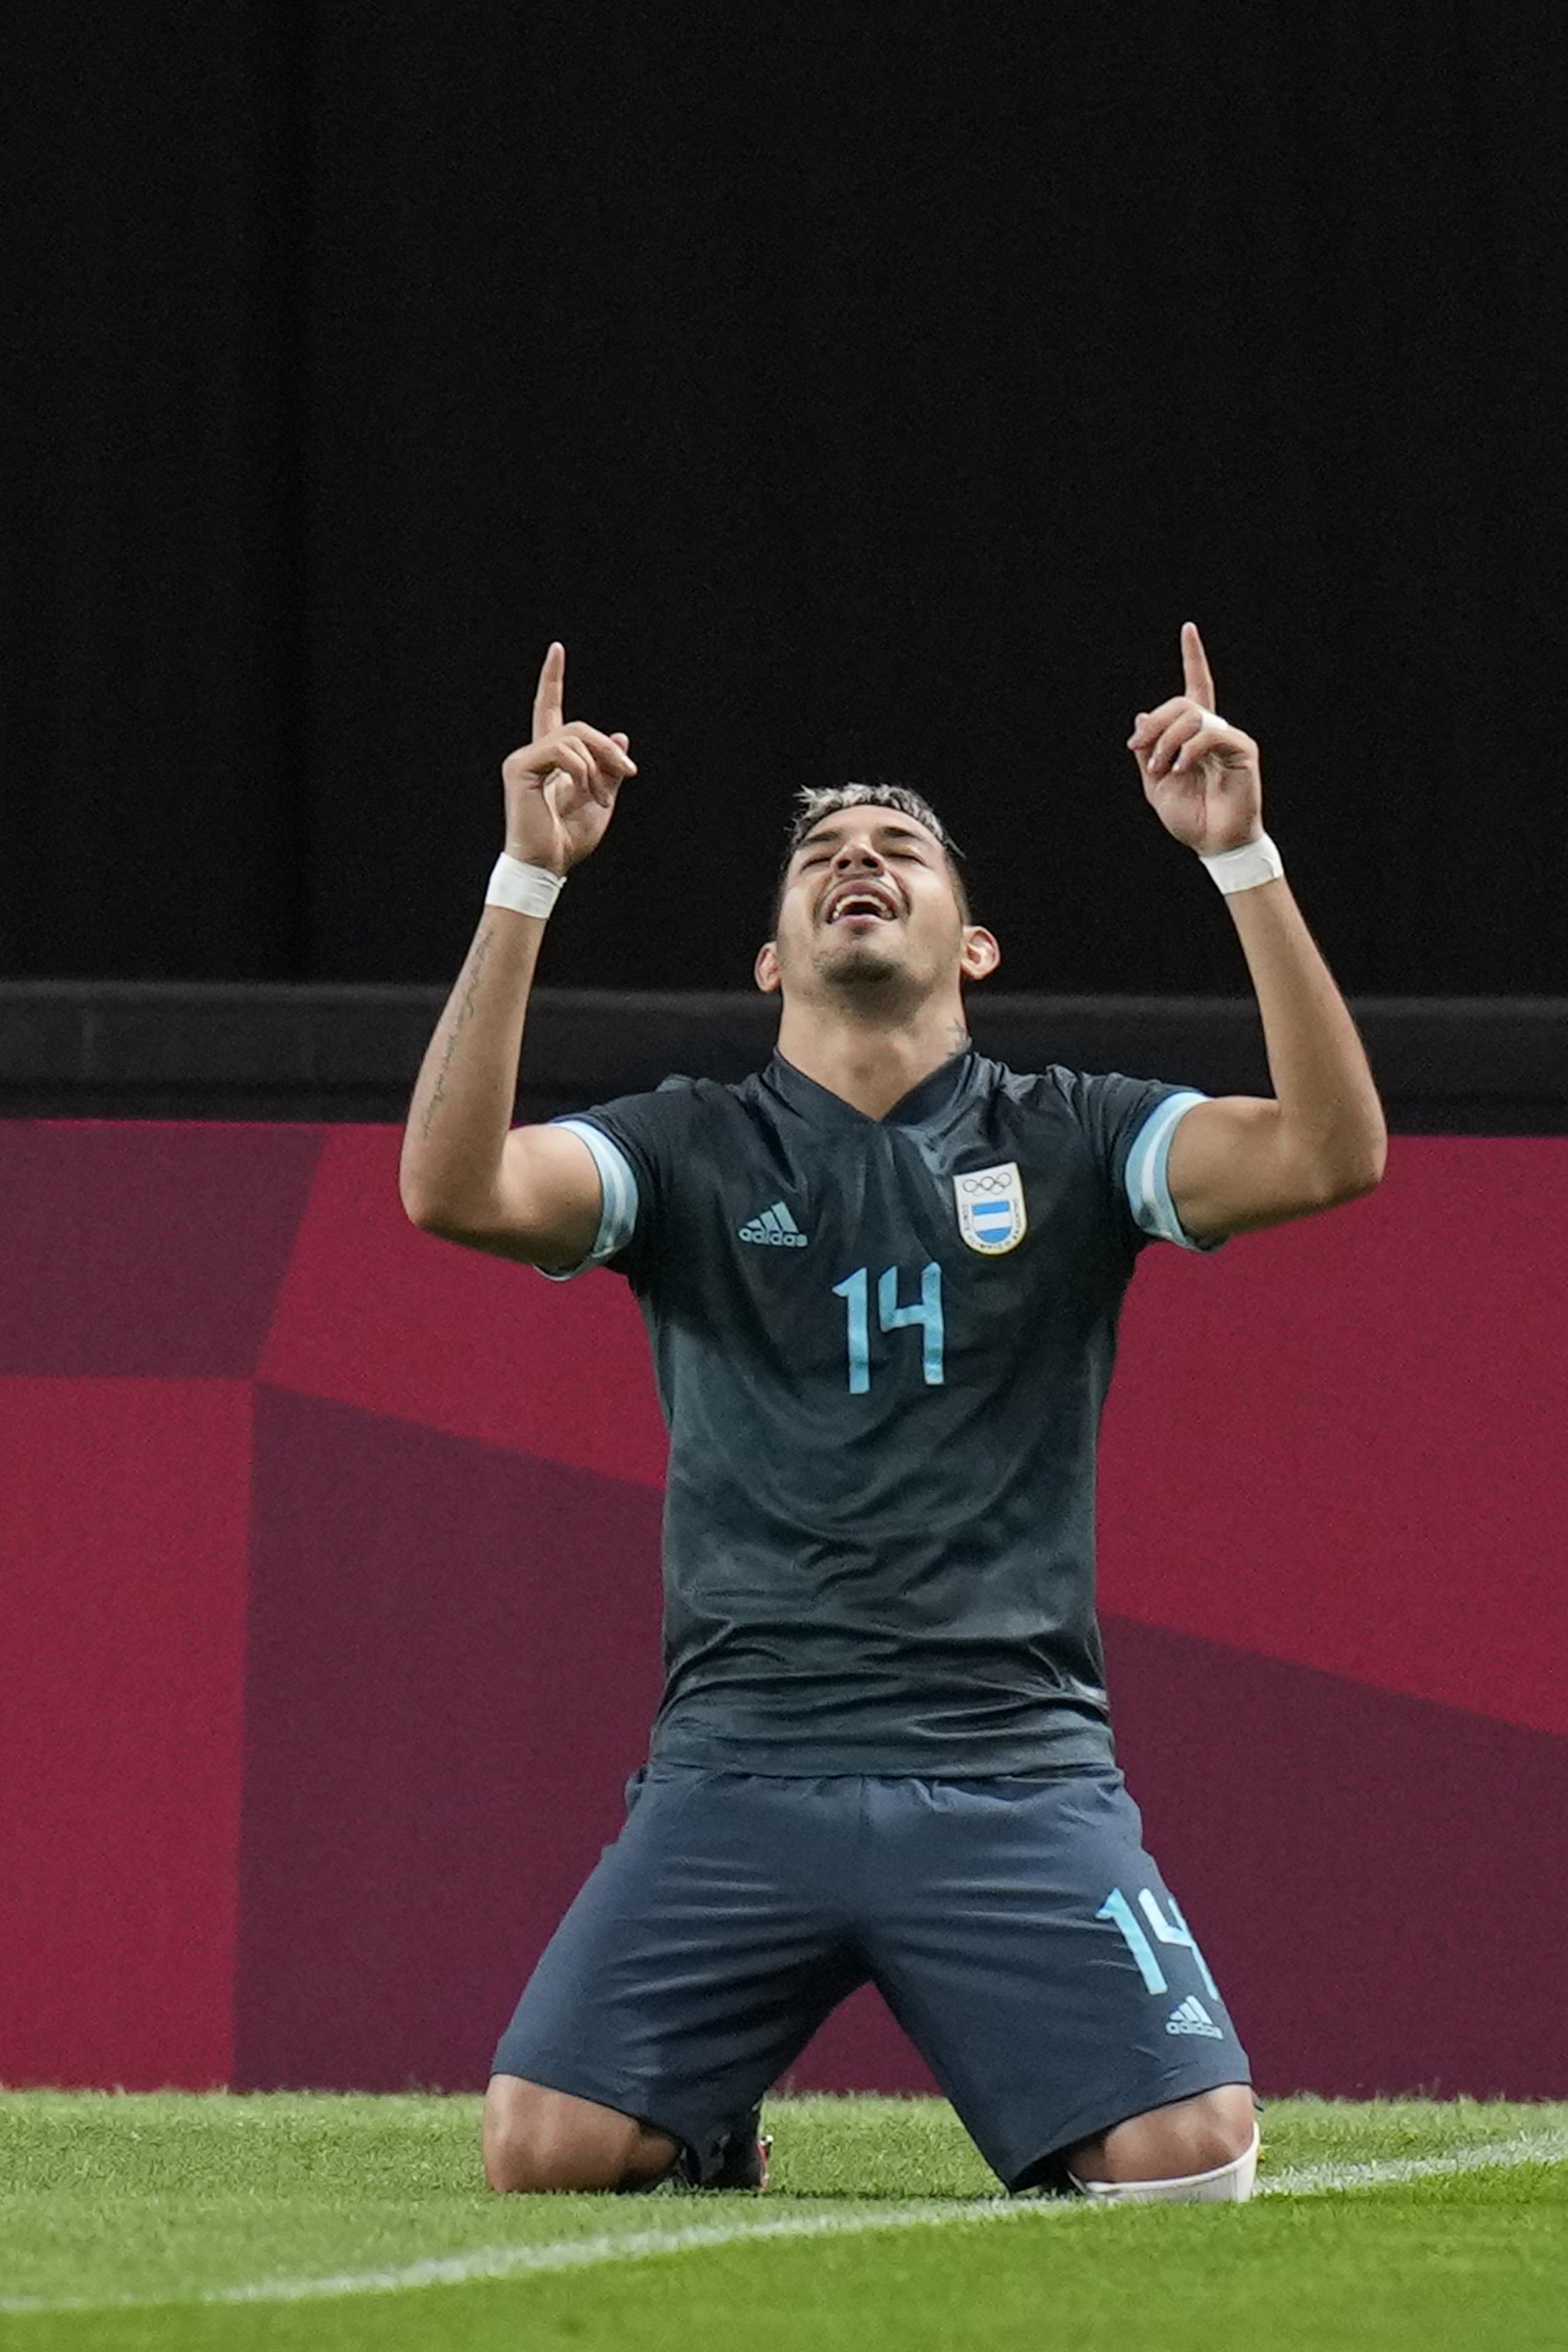 El defensor argentino Facundo Medina celebra al marcar el primer gol de su equipo contra Egipto durante un partido por la segunda fecha del fútbol masculino de los Juegos Olímpicos de Tokio.